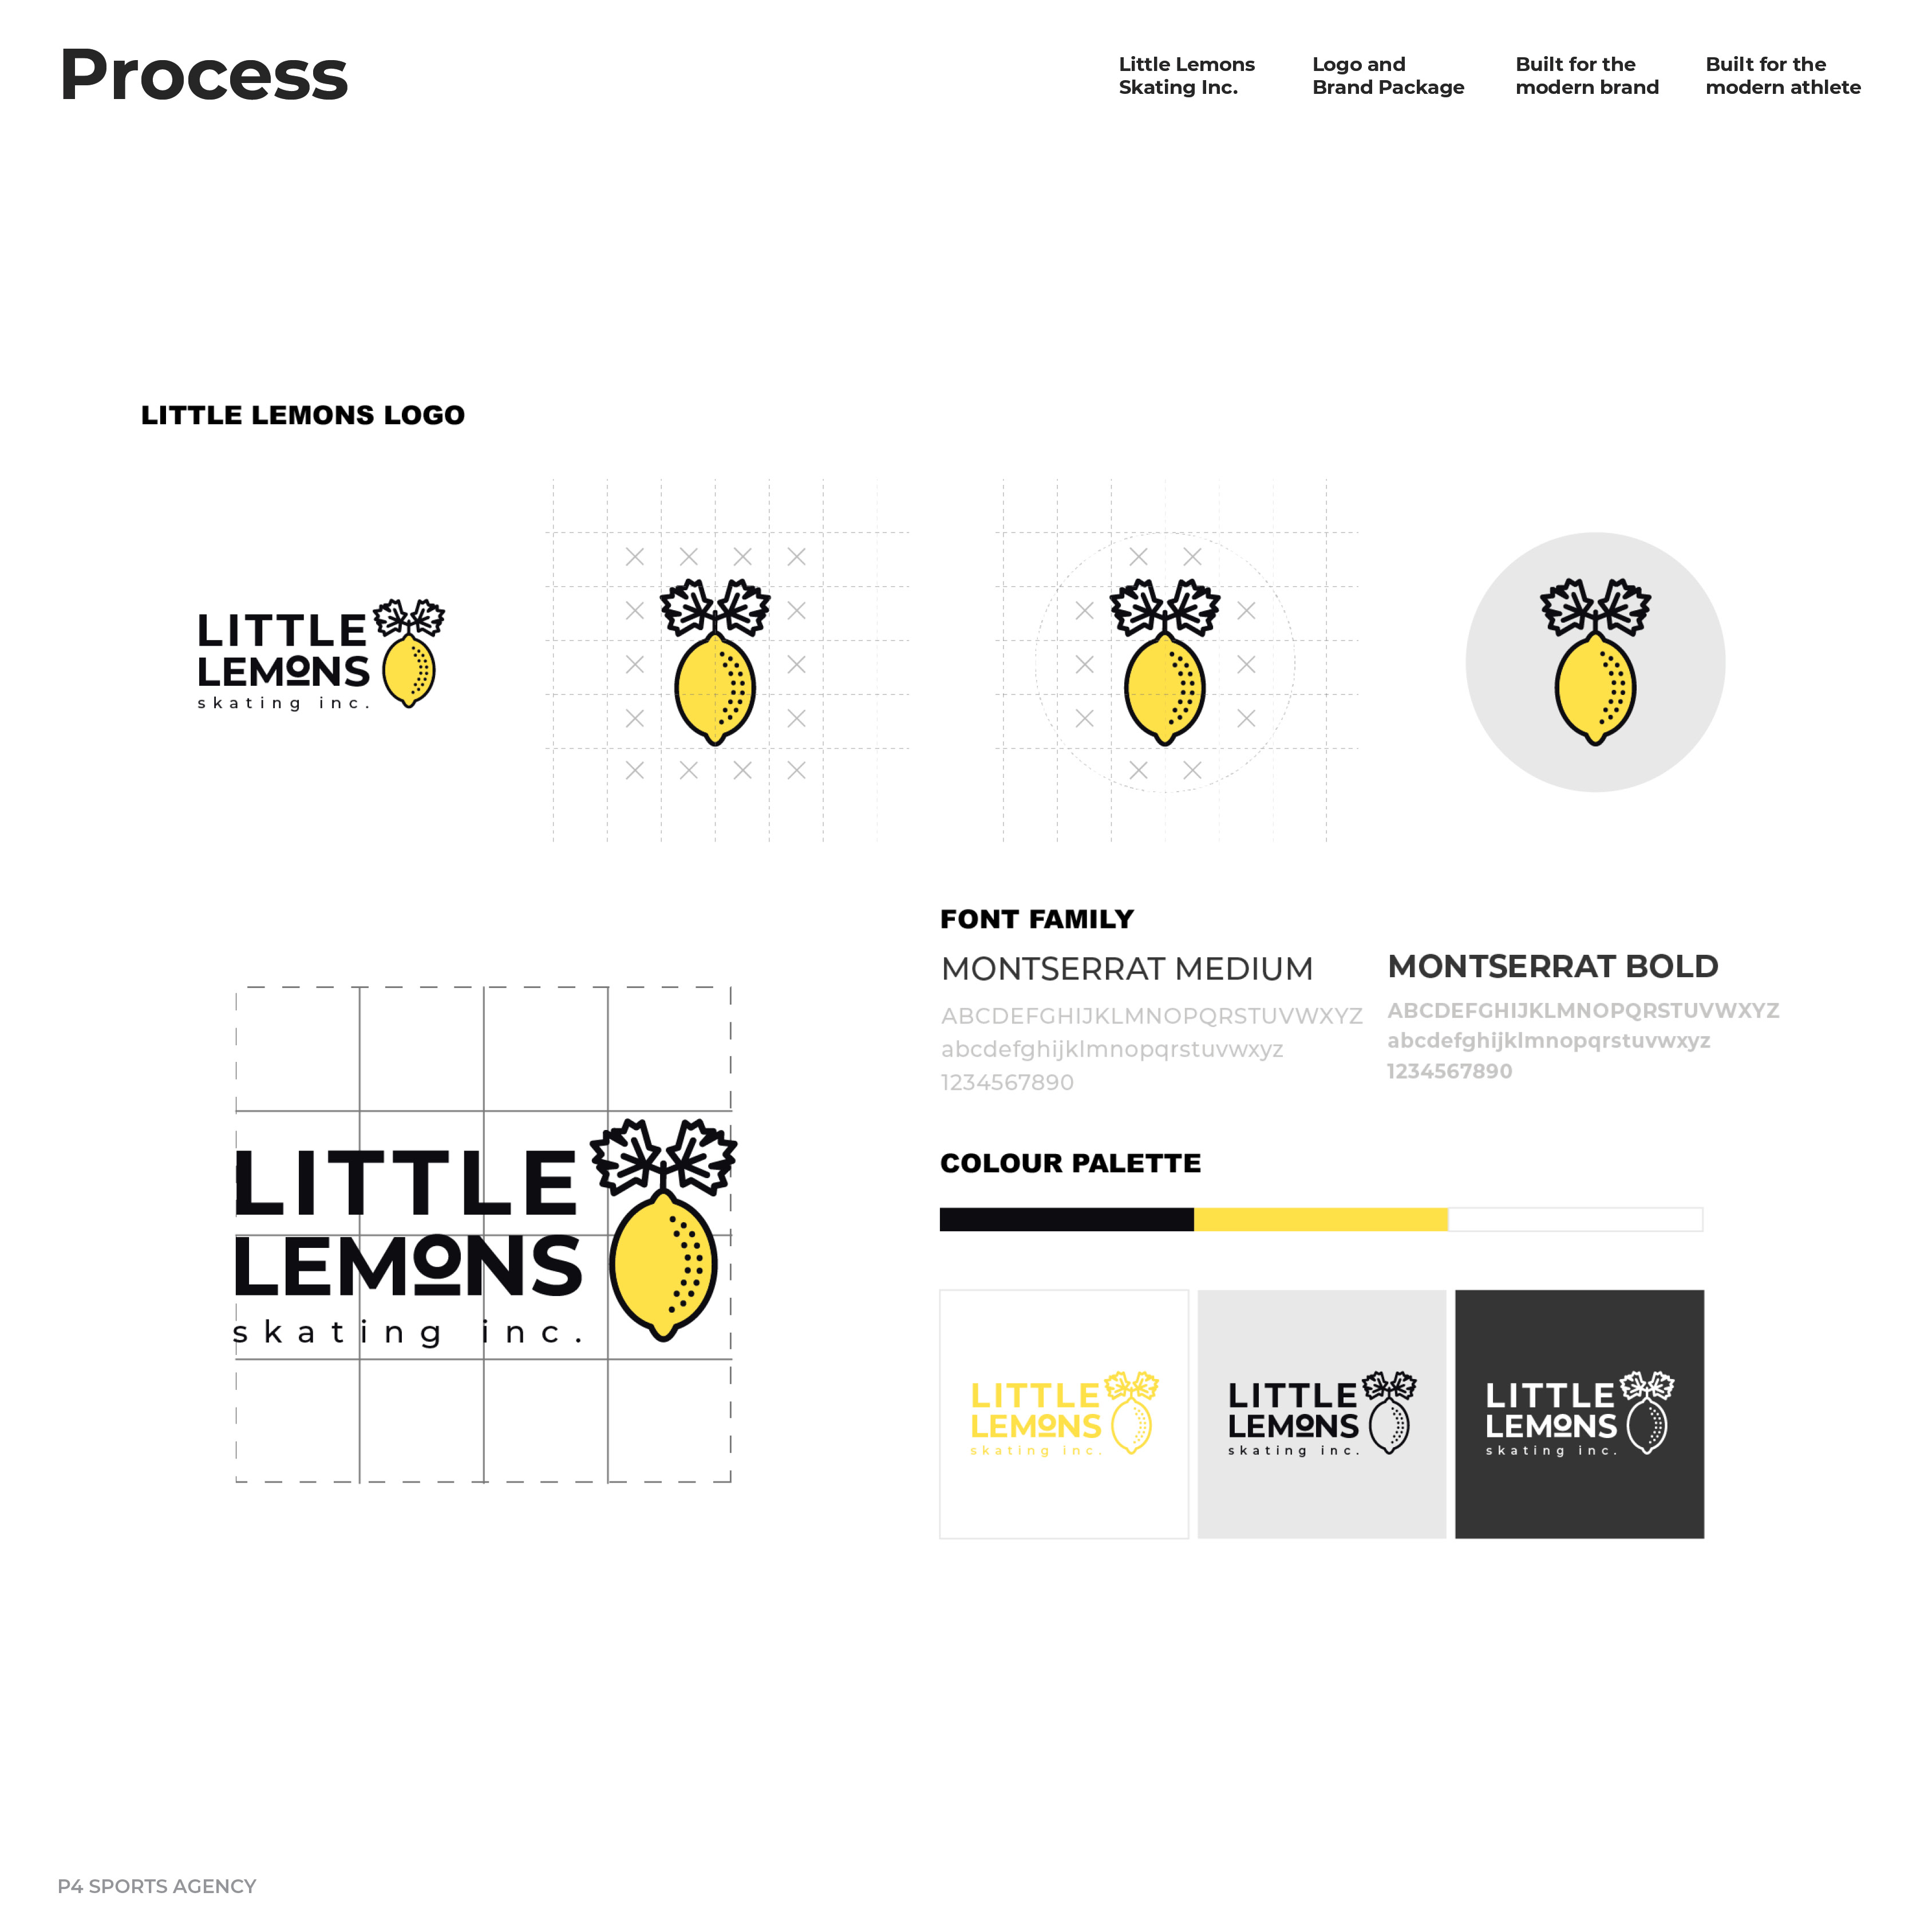 Little Lemons Skating Logo Process